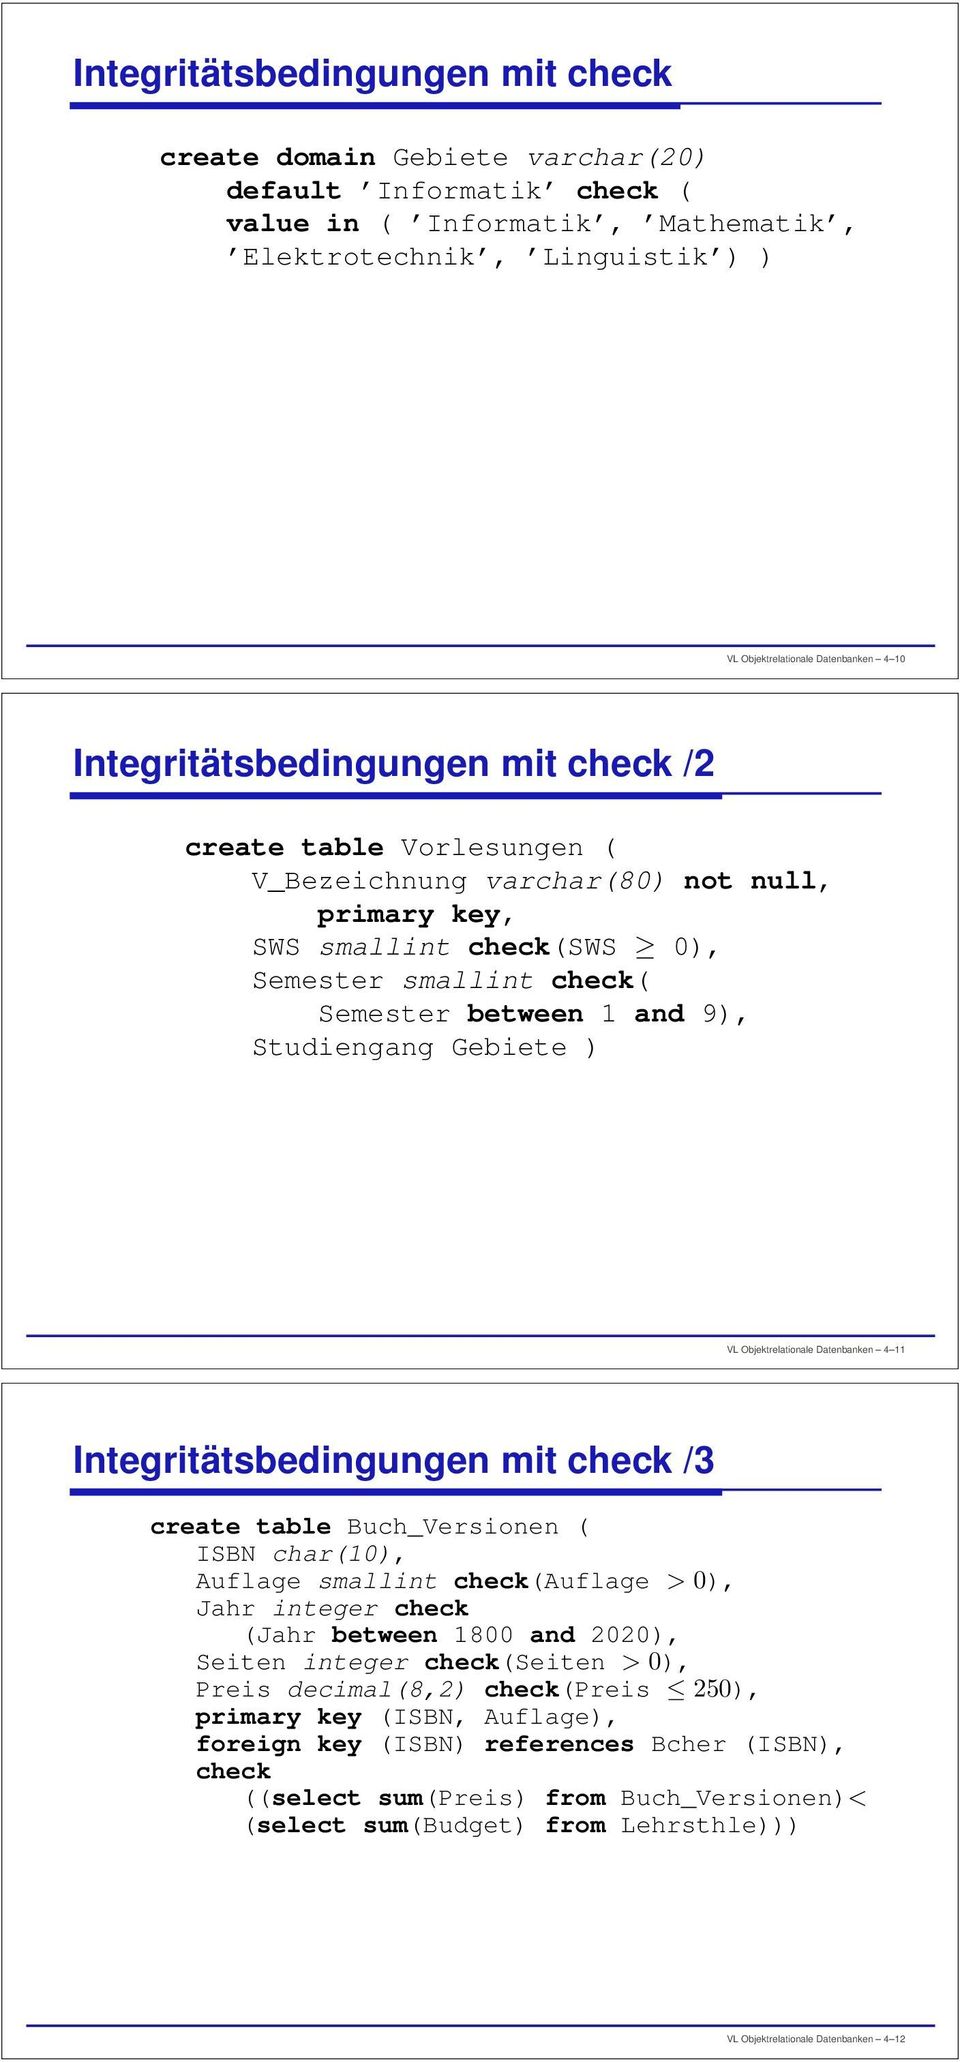 Studiengang Gebiete ) VL Objektrelationale Datenbanken 4 11 Integritätsbedingungen mit check /3 create table Buch_Versionen ( ISBN char(10), Auflage smallint check(auflage > 0), Jahr integer check